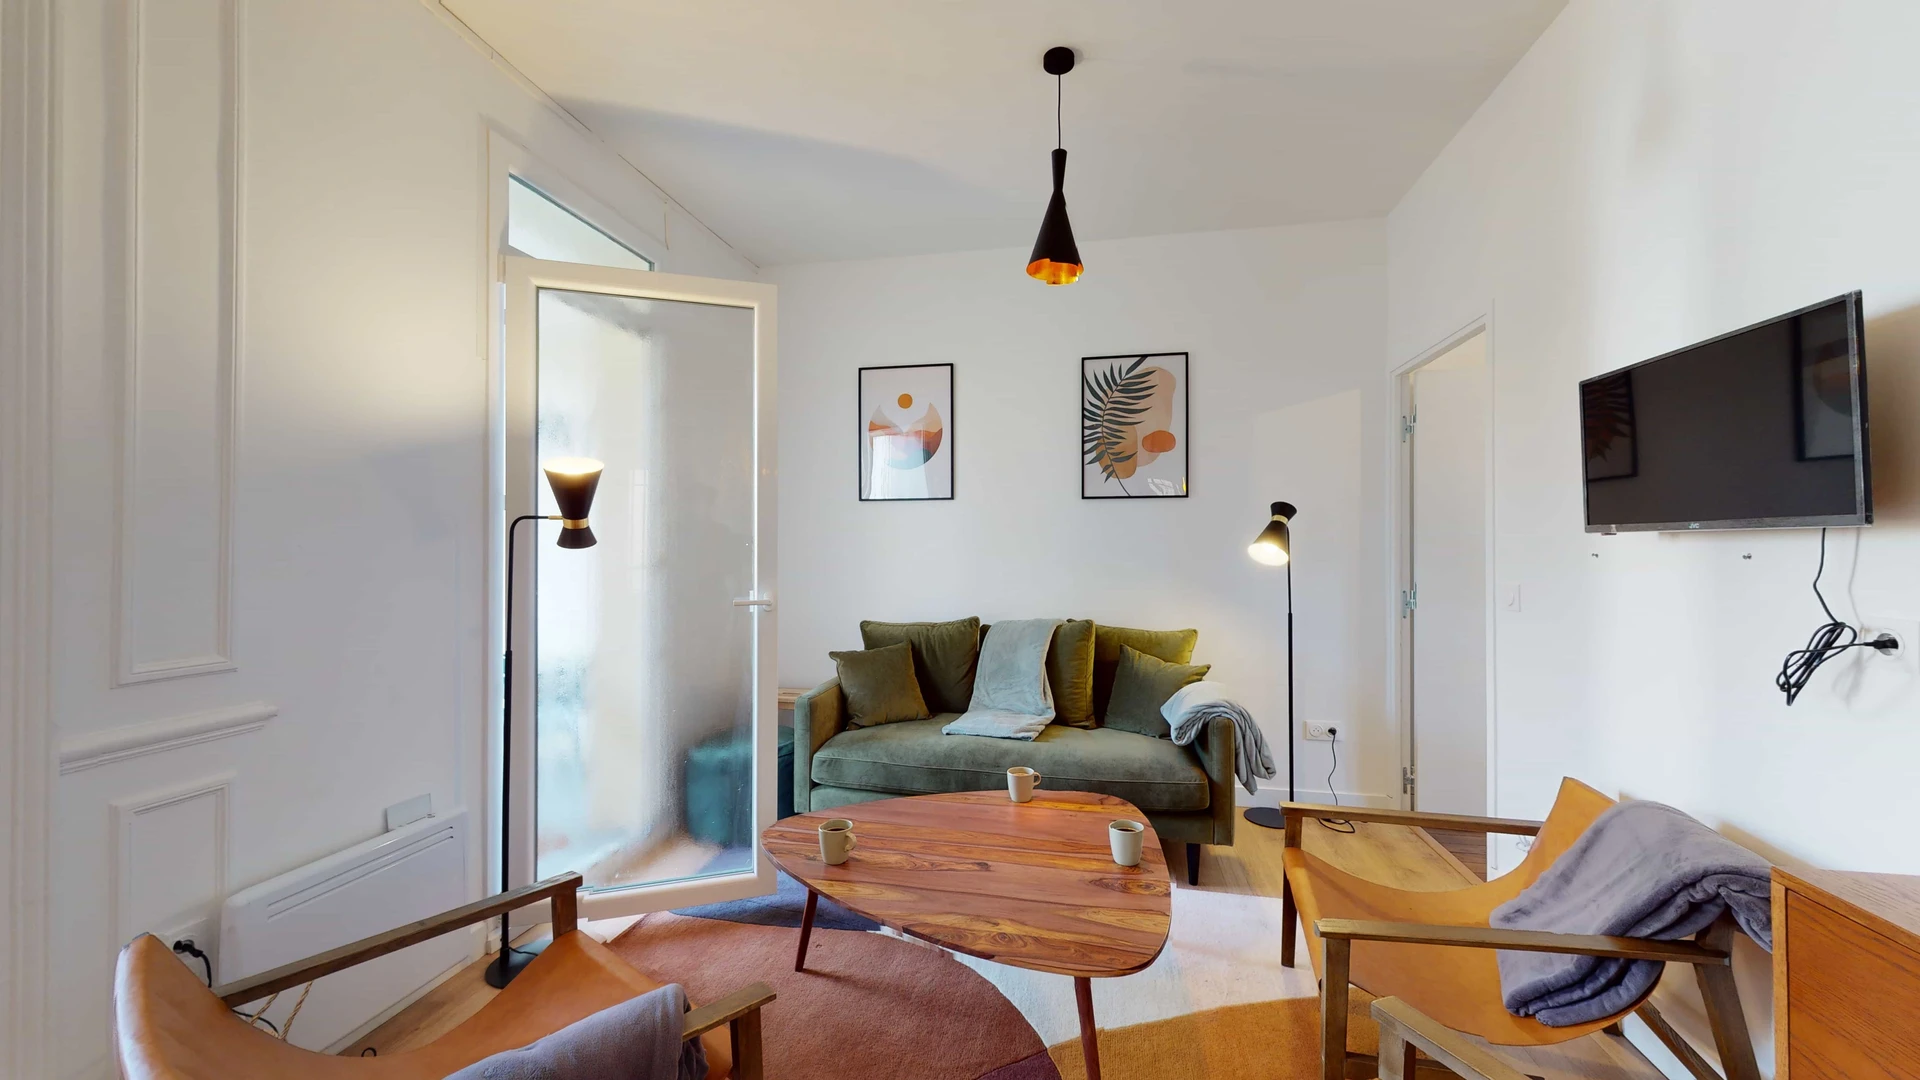 Alquiler de habitaciones por meses en París